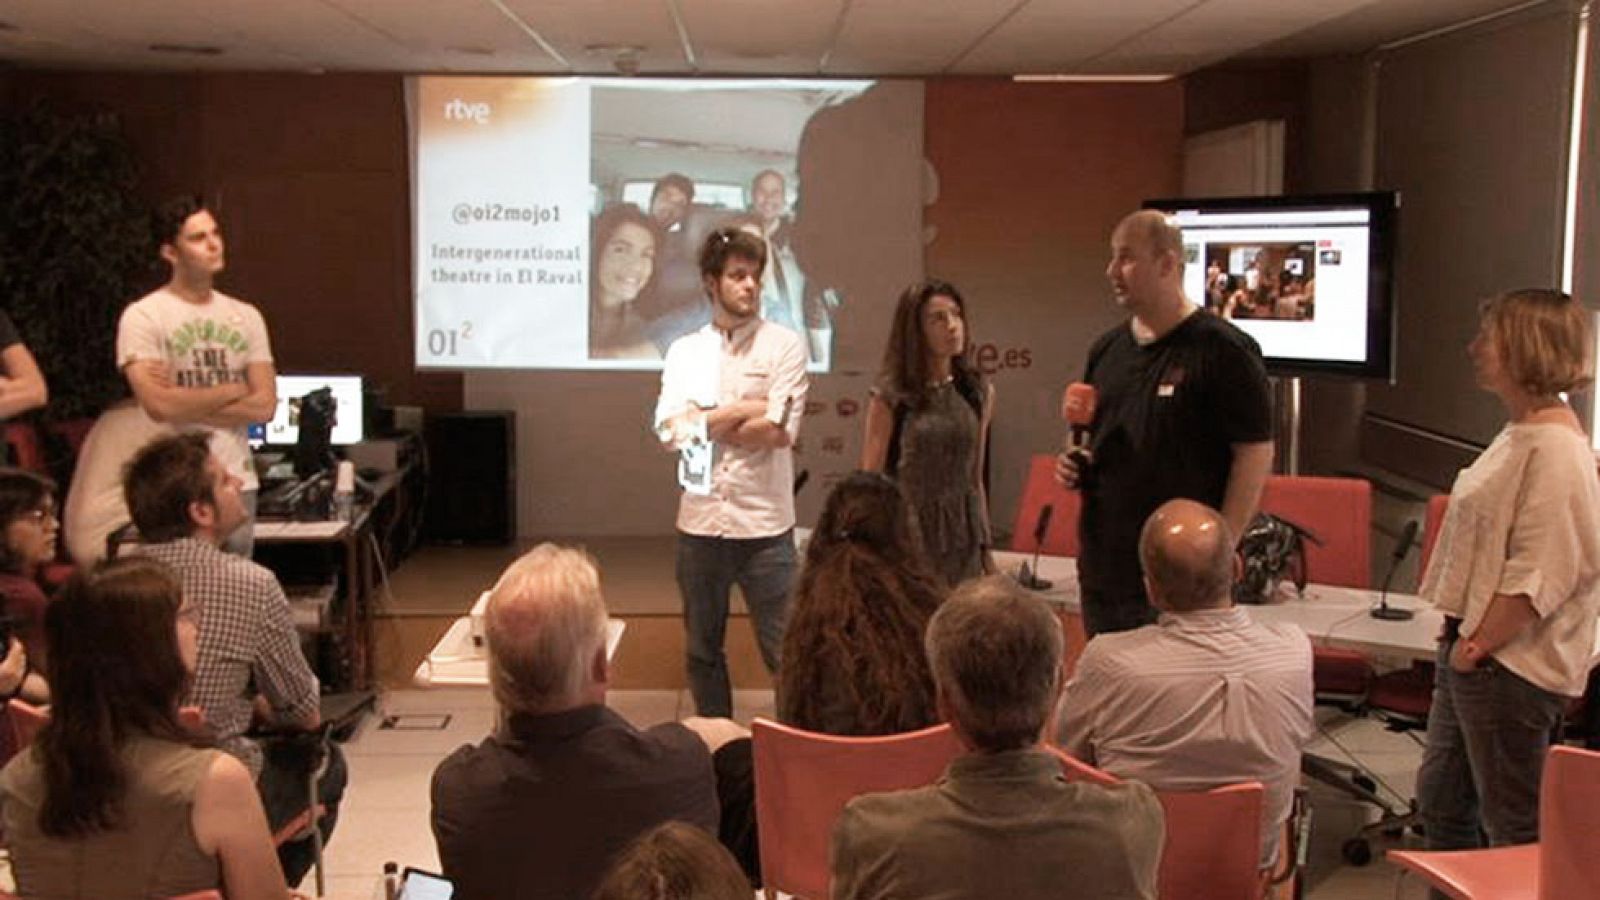 OI2 - Presentación del reportaje sobre teatro intergeneracional situado en el barrio del Raval, Barcelona